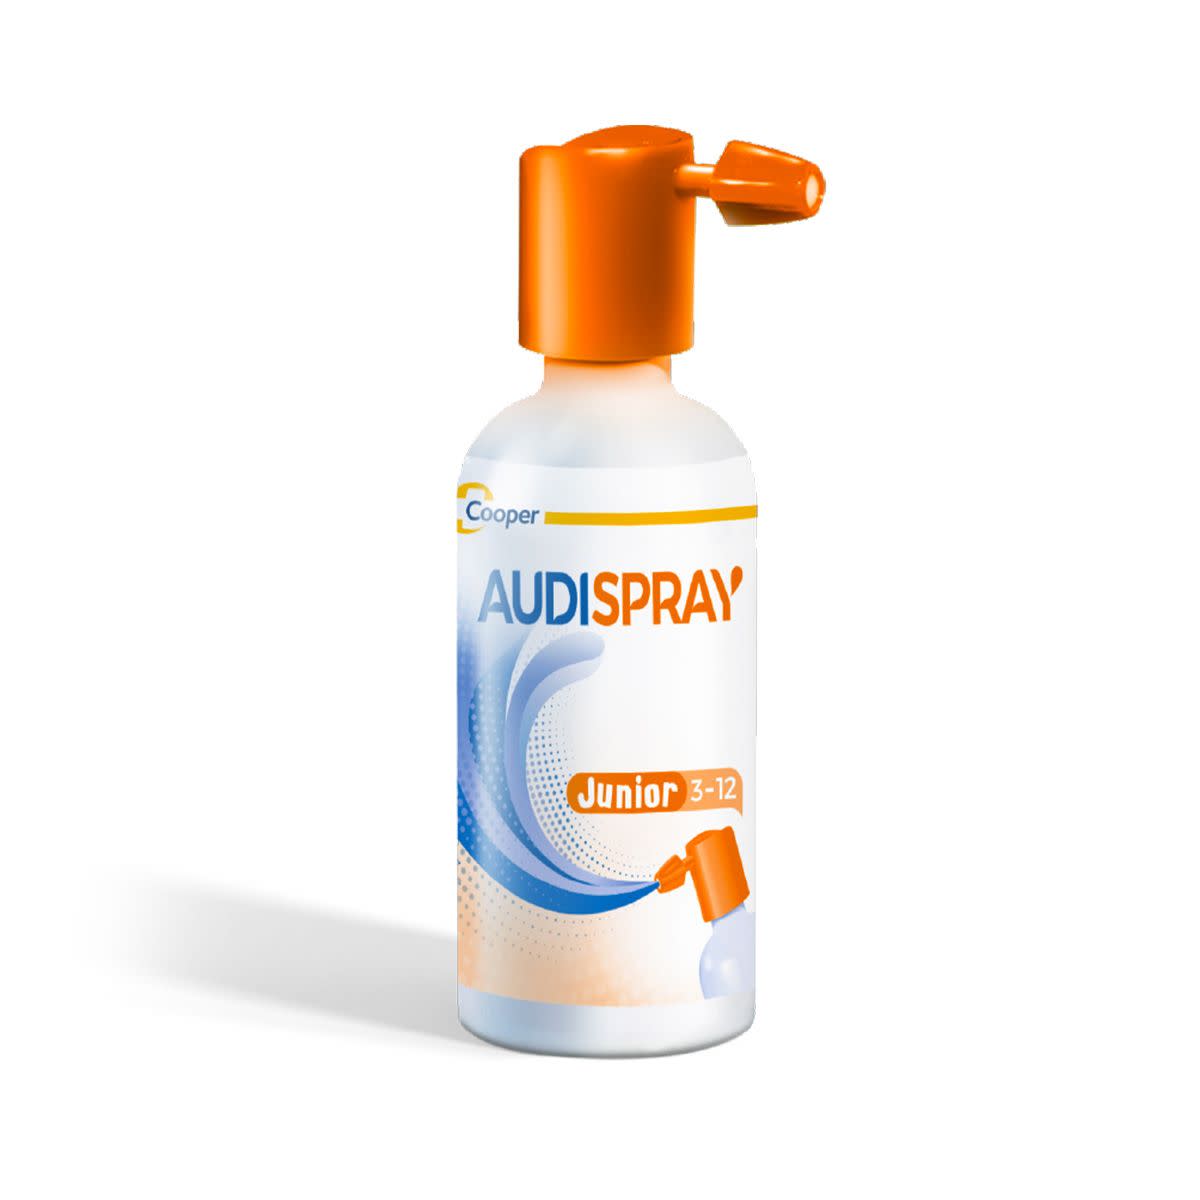 912467281 - Audispray Junior Spray Igiene Orecchio 25ml - 7870788_3.jpg